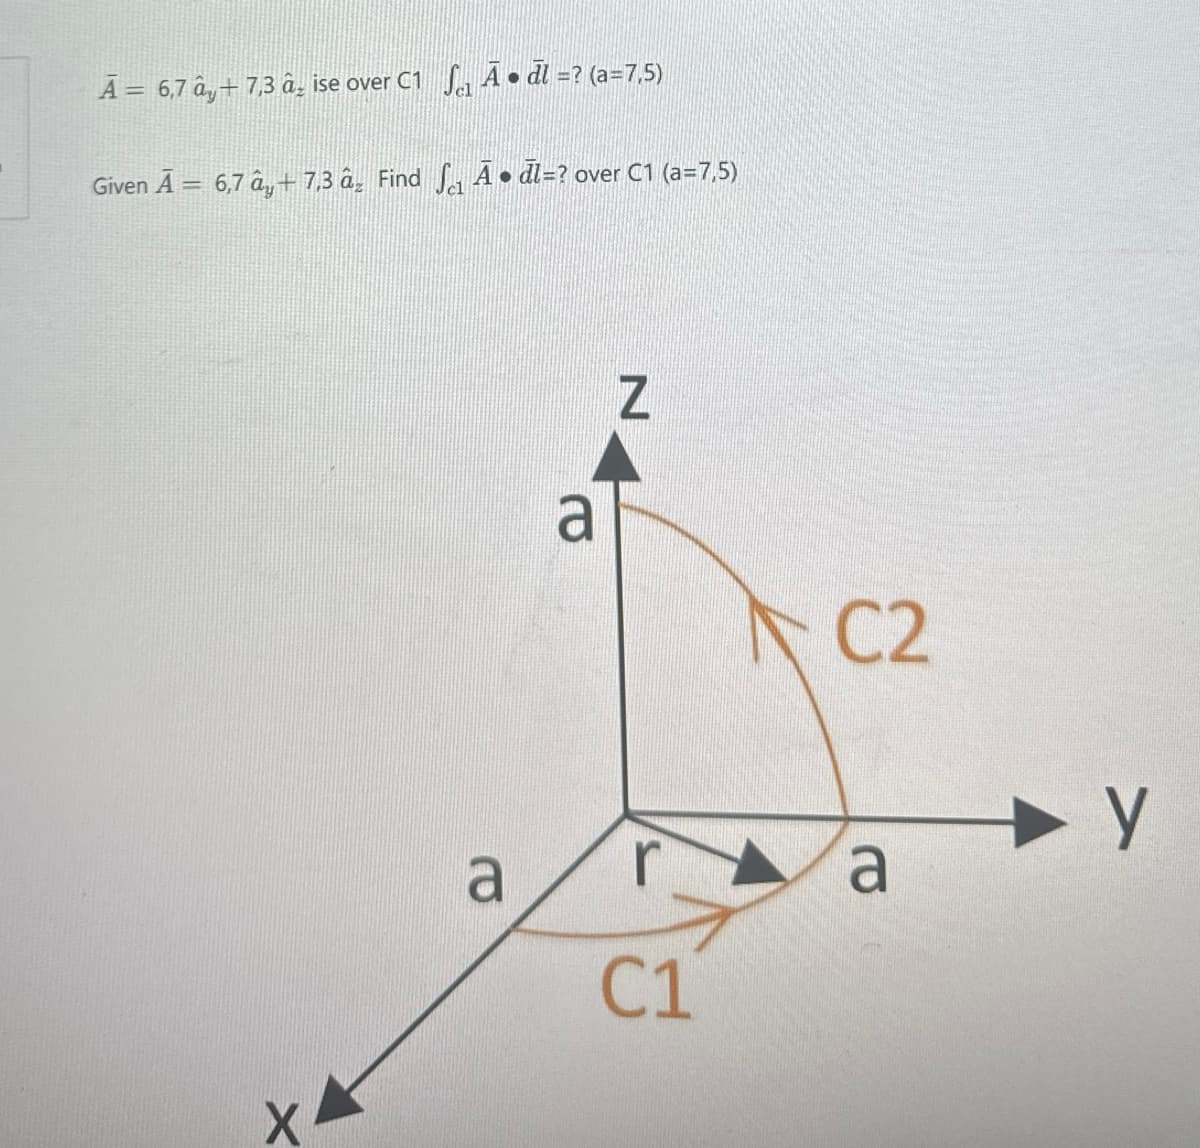 Ã = 6,7 ây + 7,3 â ise over C1 Ā⚫dl=? (a=7,5)
Given A = 6,7 â+ 7,3 âz Find √ A⚫dl=? over C1 (a=7,5)
X
a
a
Z
C2
a
C1